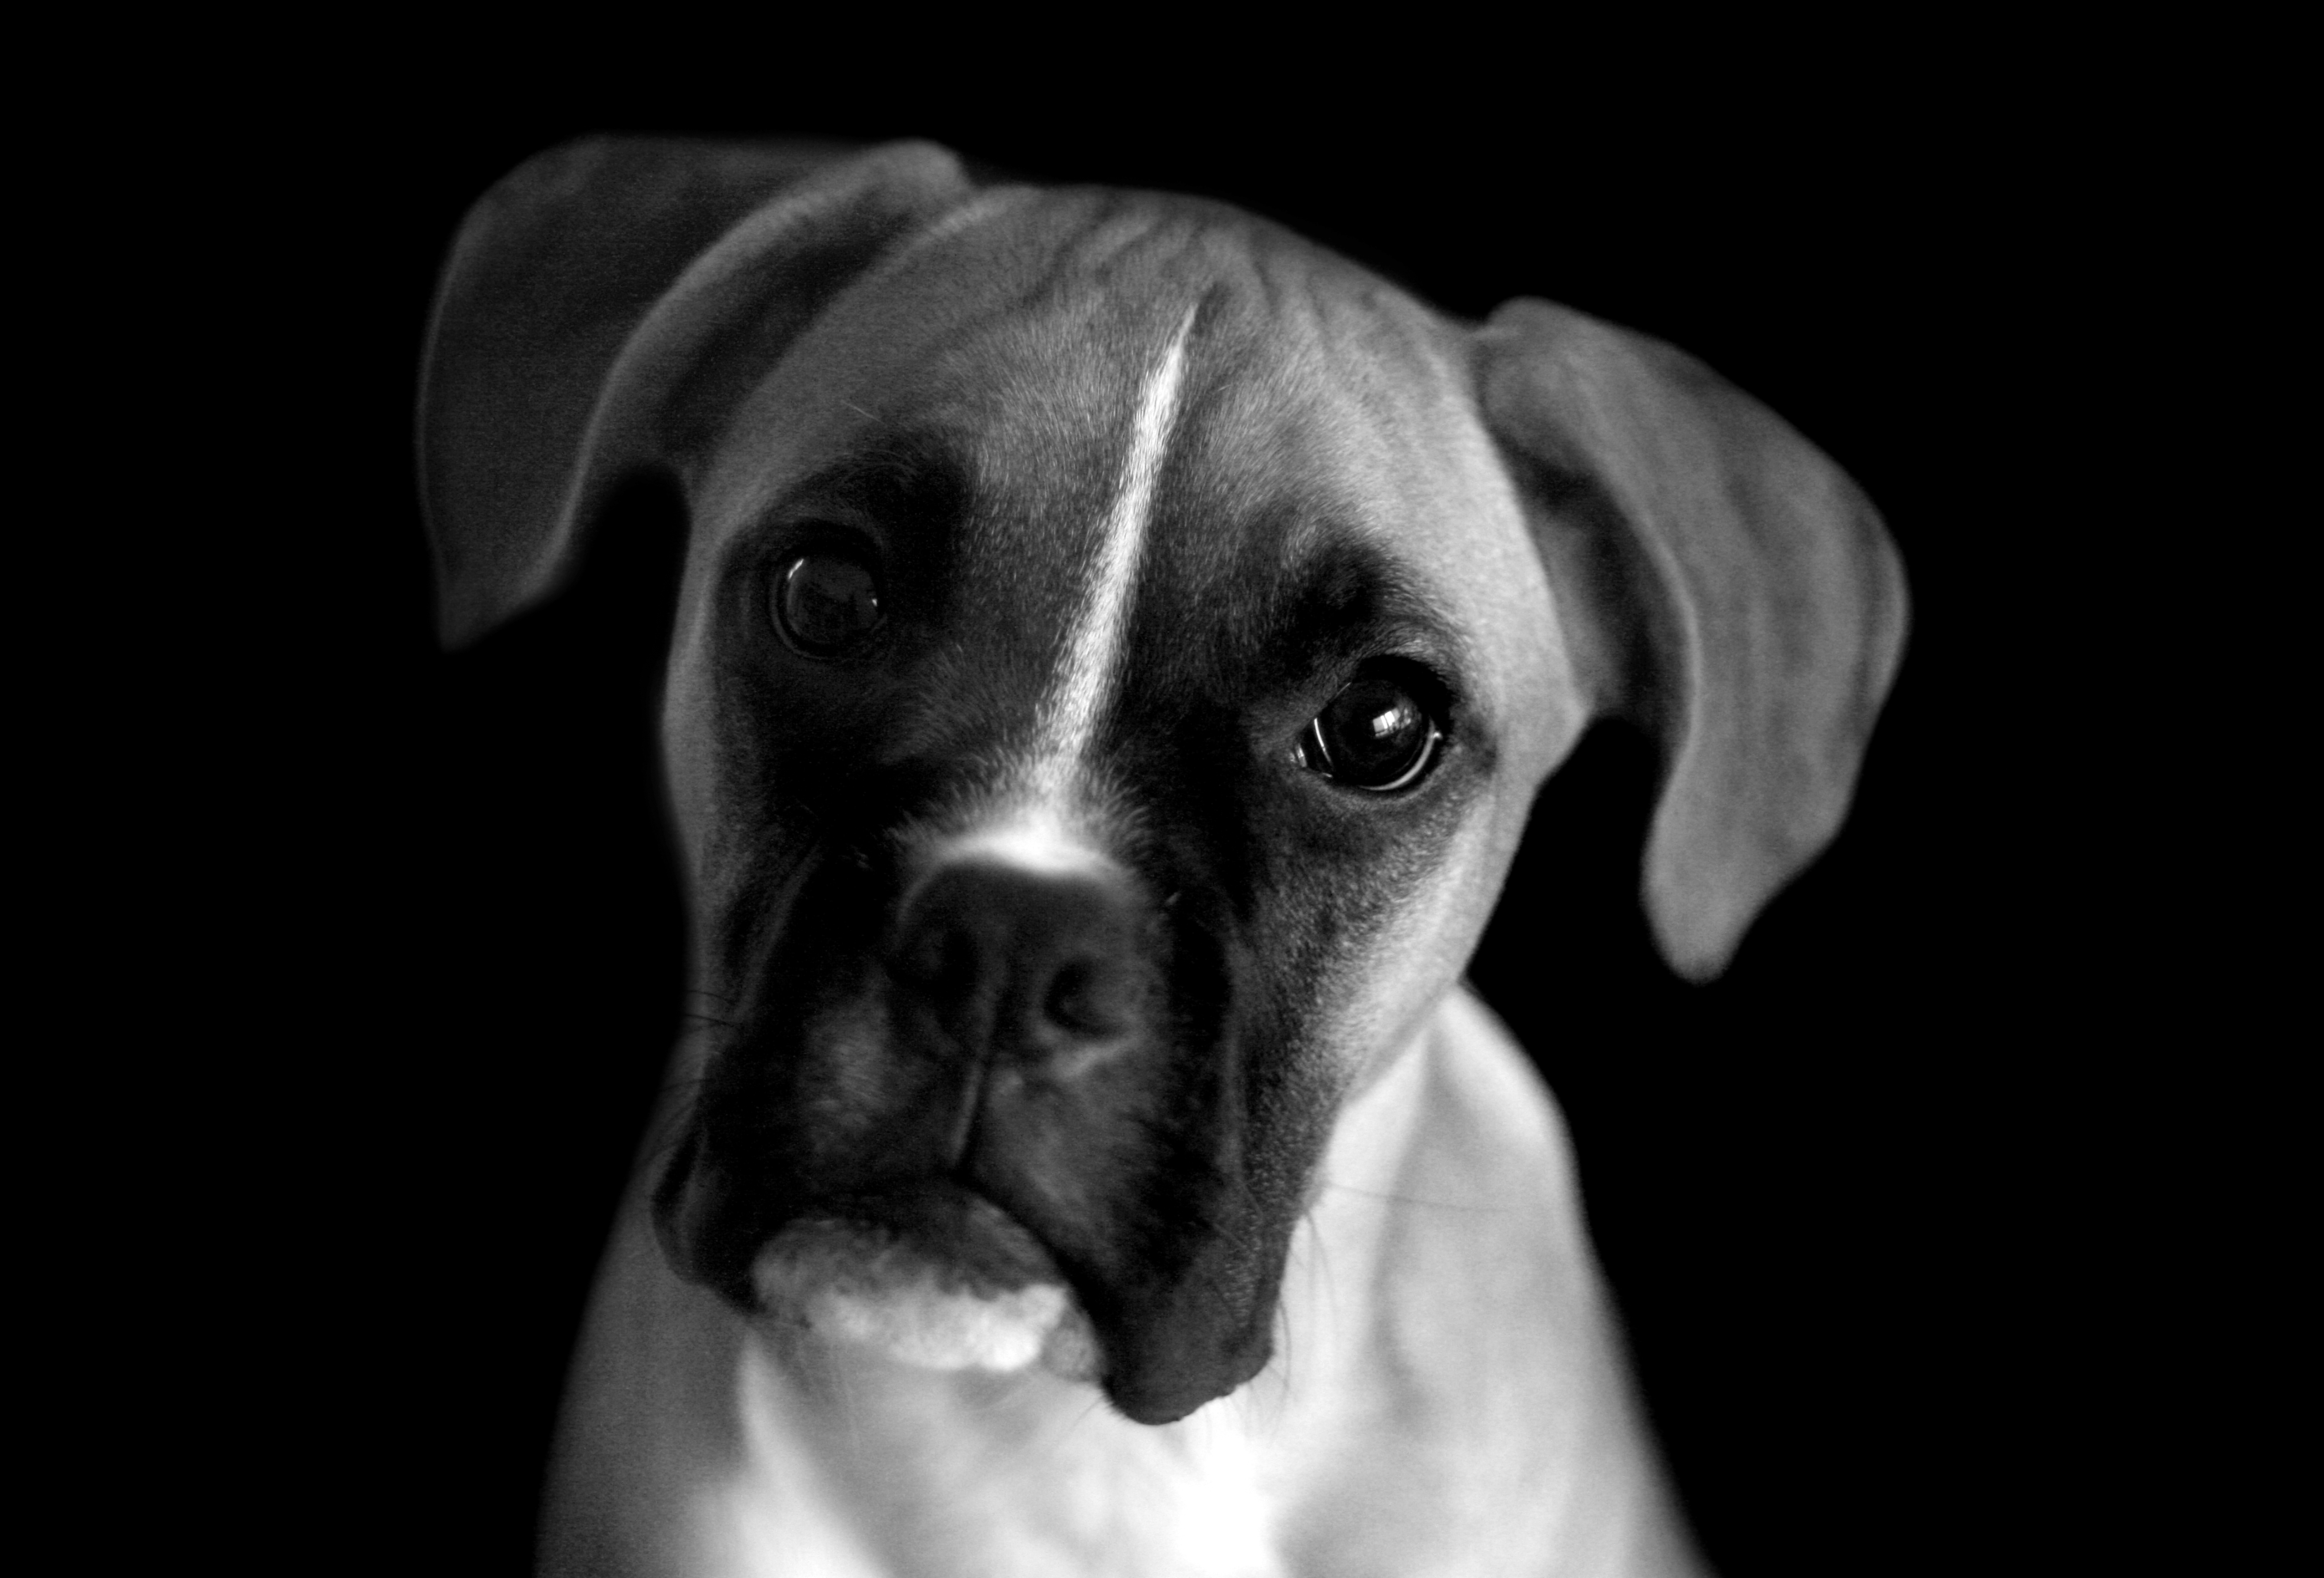 White dog portrait photo